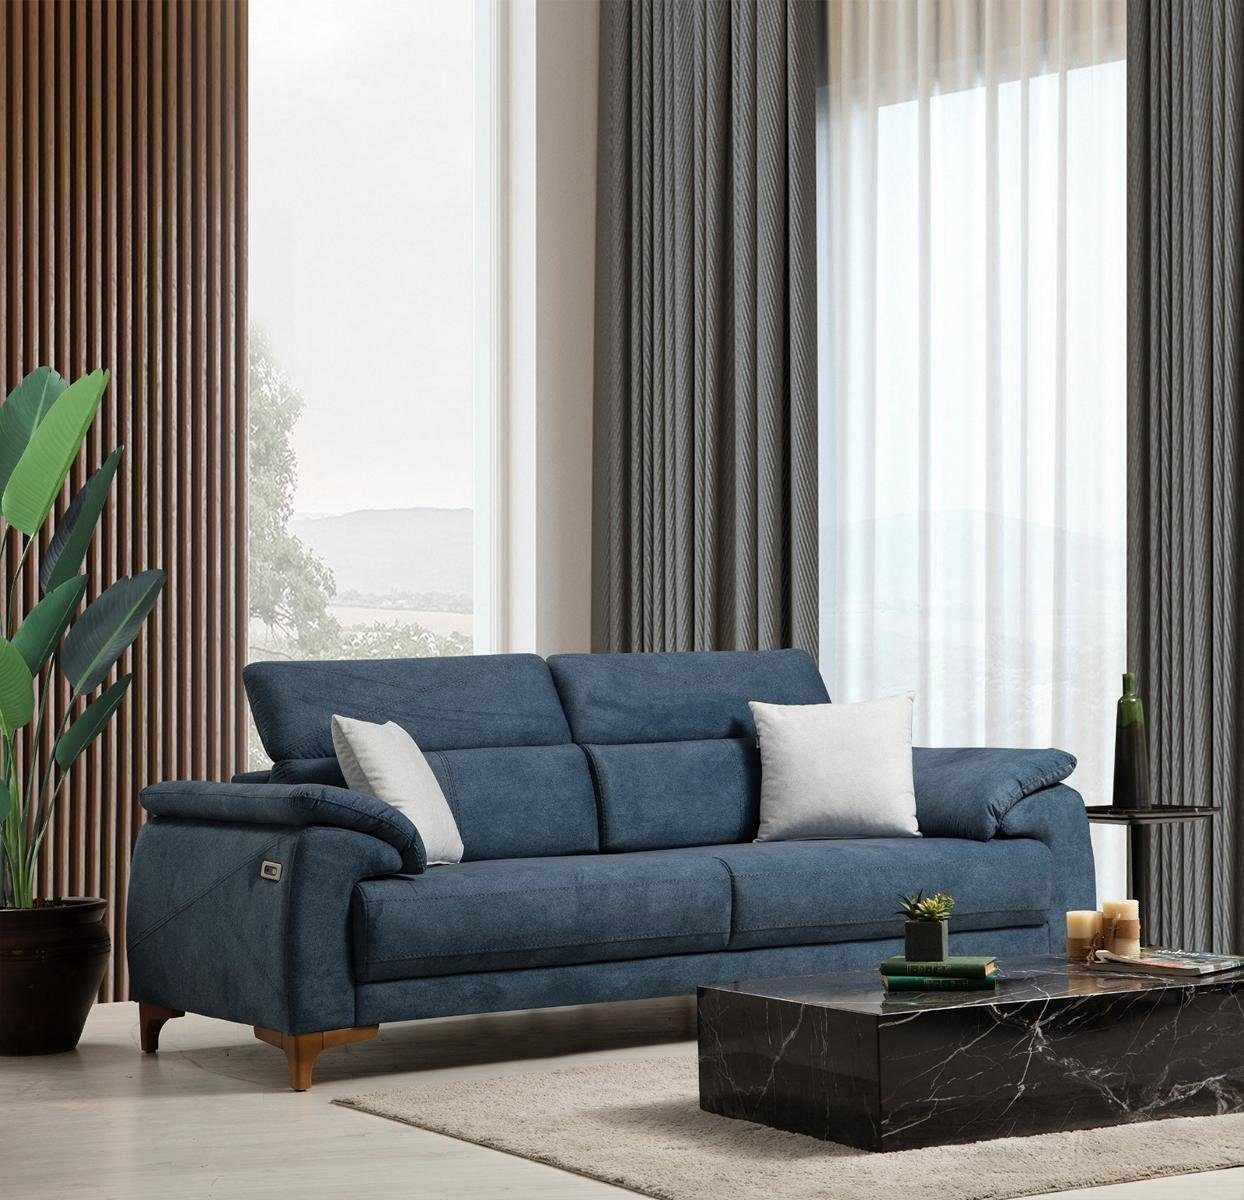 JVmoebel 3-Sitzer Blau Sofa Wohnzimmer Design, Teile, Made Modern in 1 Polstersofa Möbel Europa